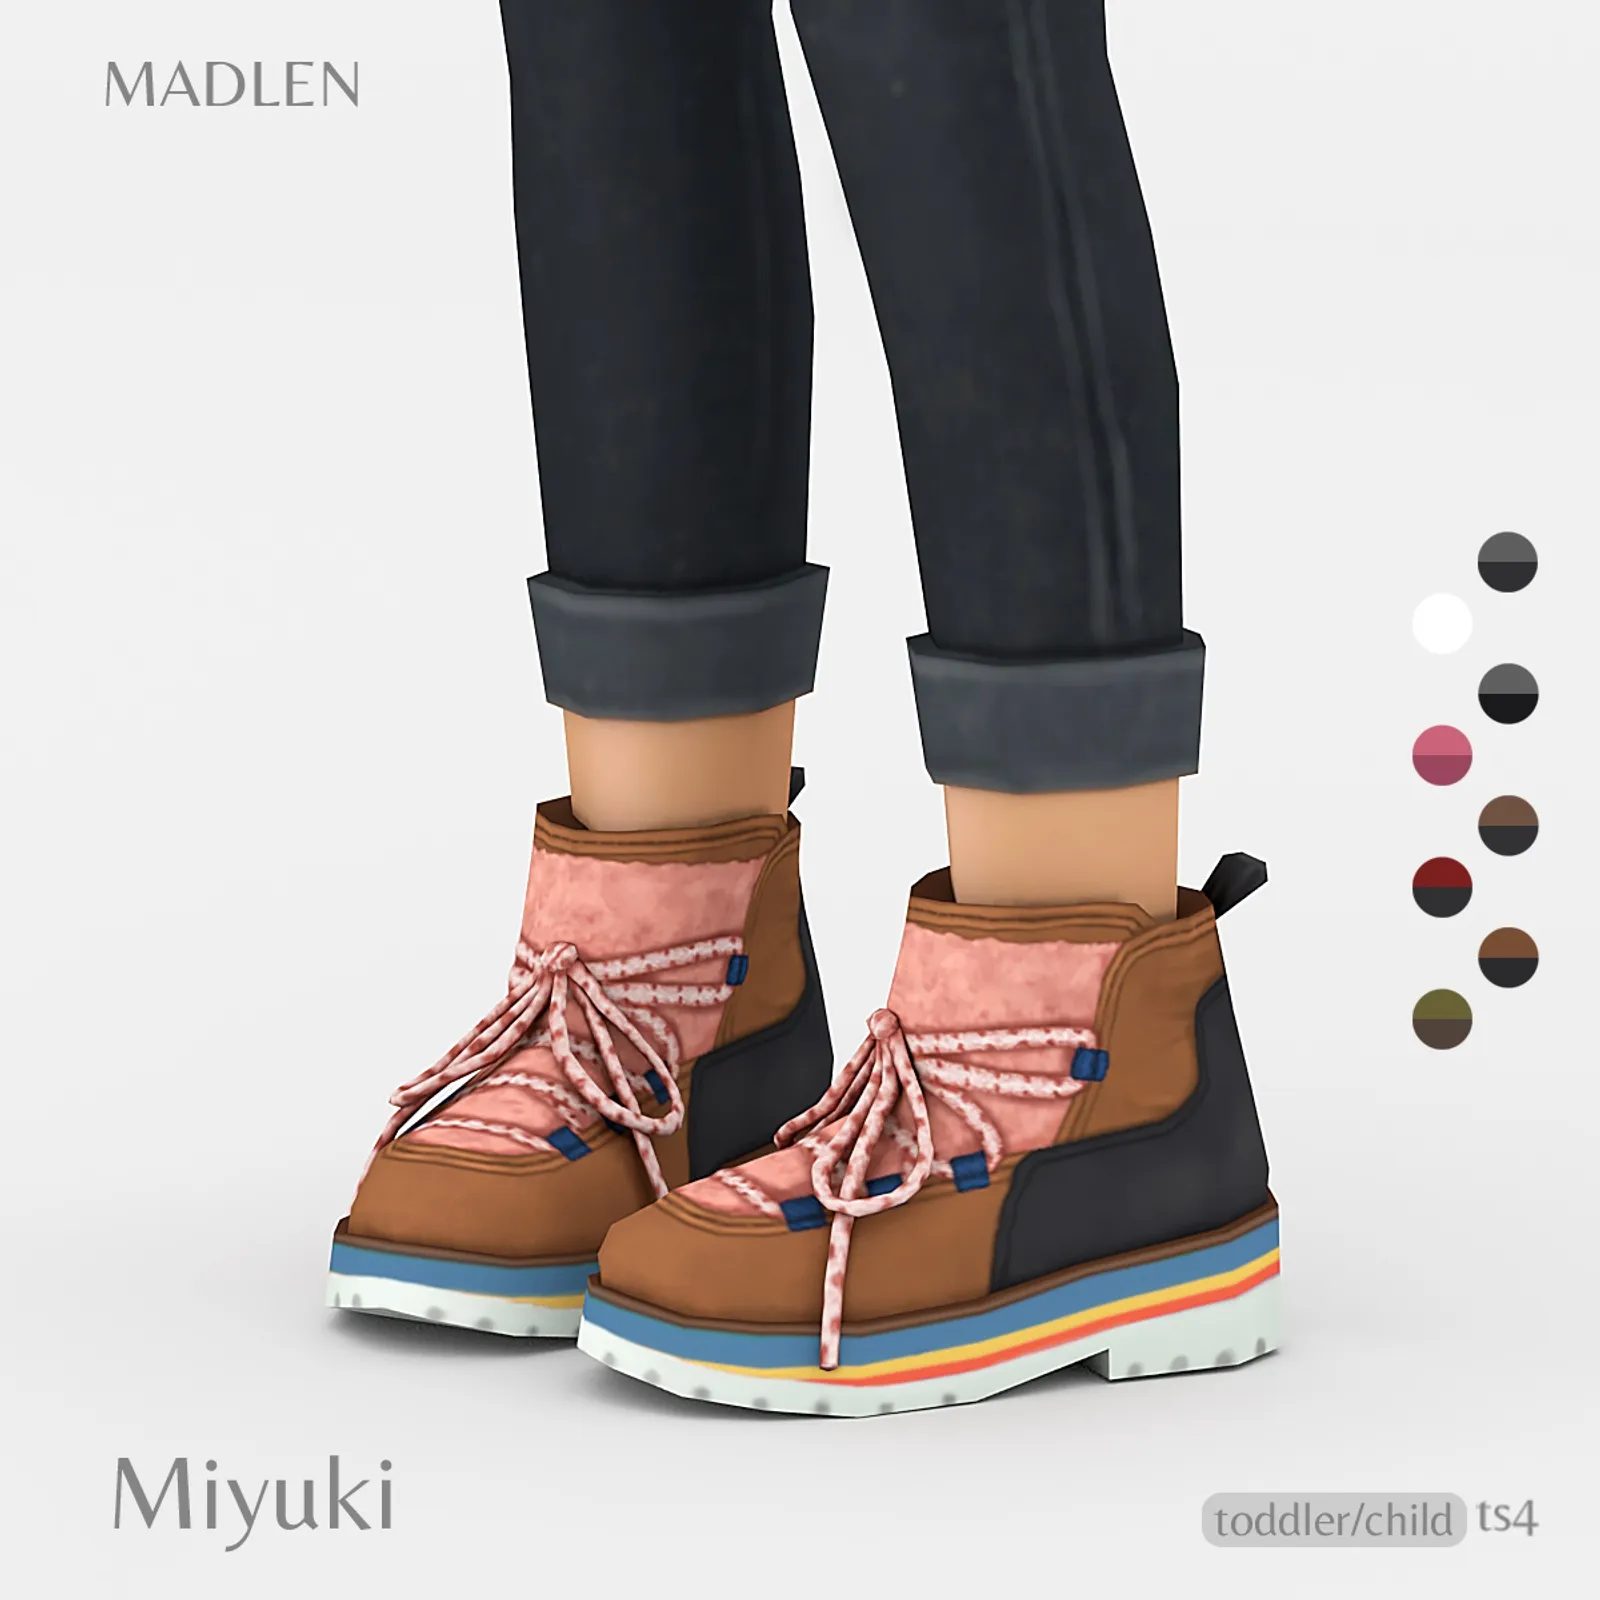 Miyuki Boots